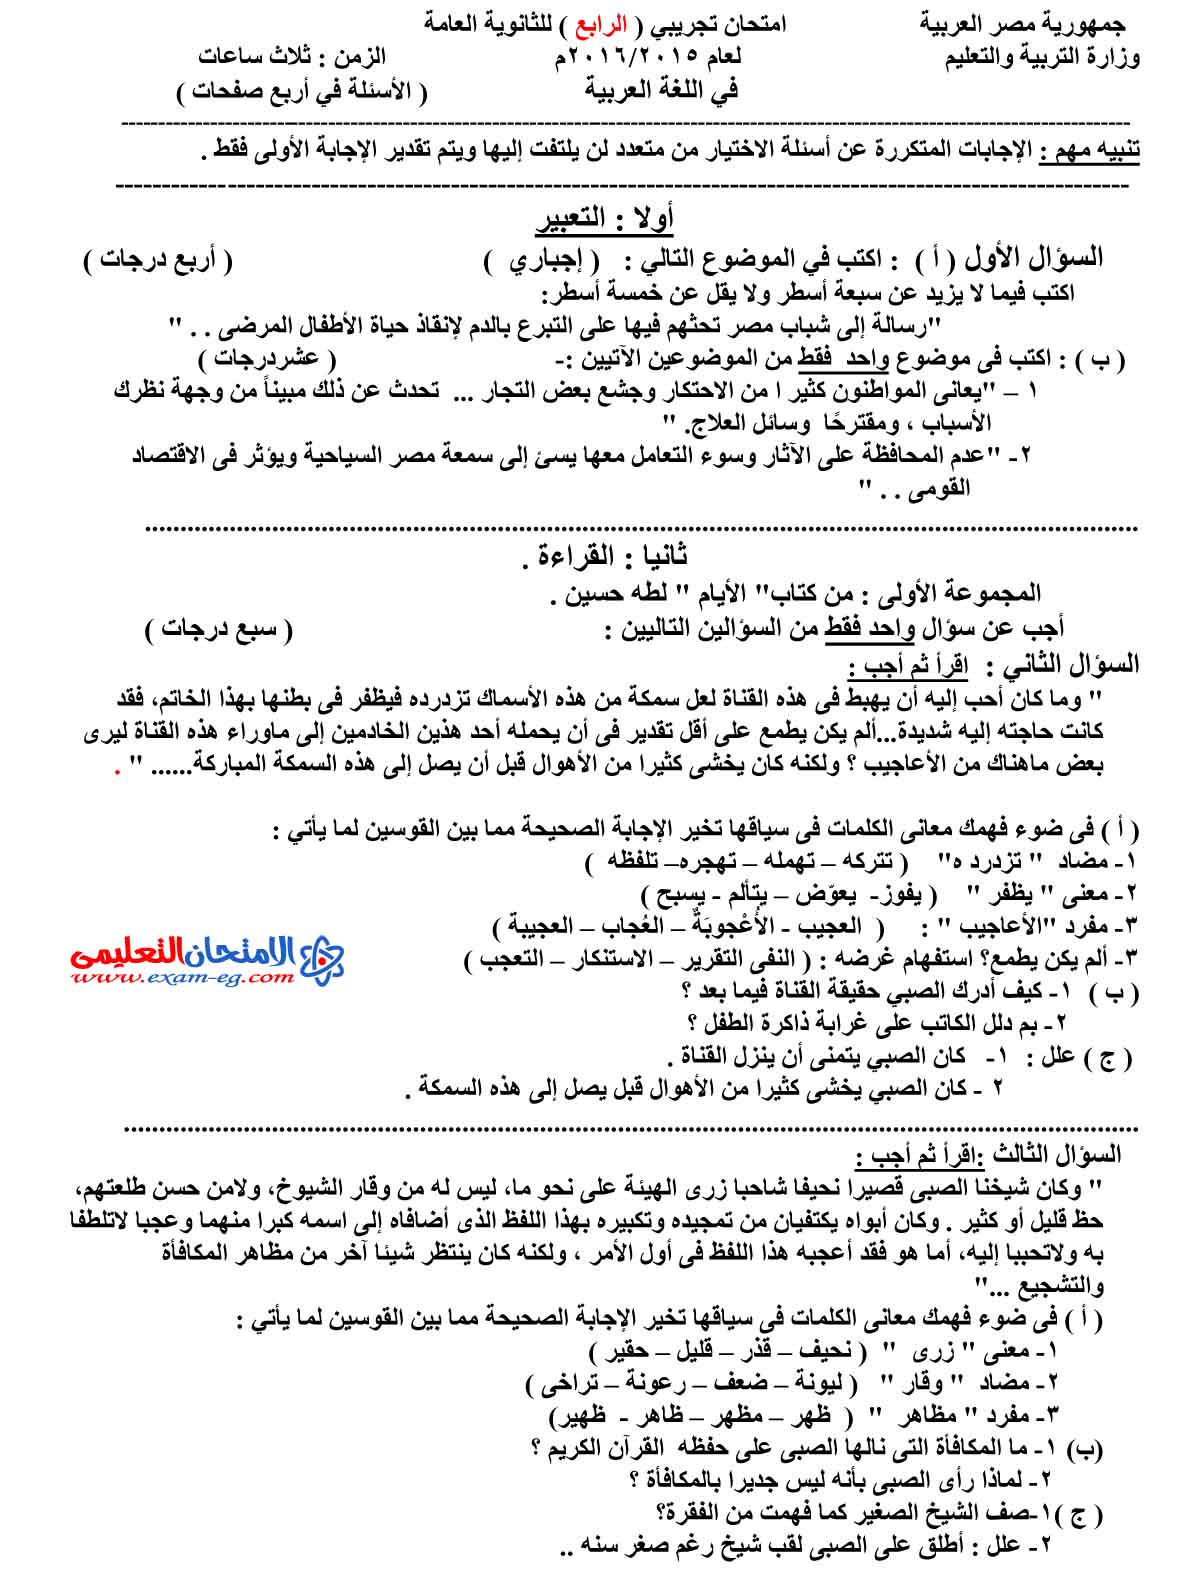 امتحان اللغة العربية 4 - مدرسة اون لاين (1)